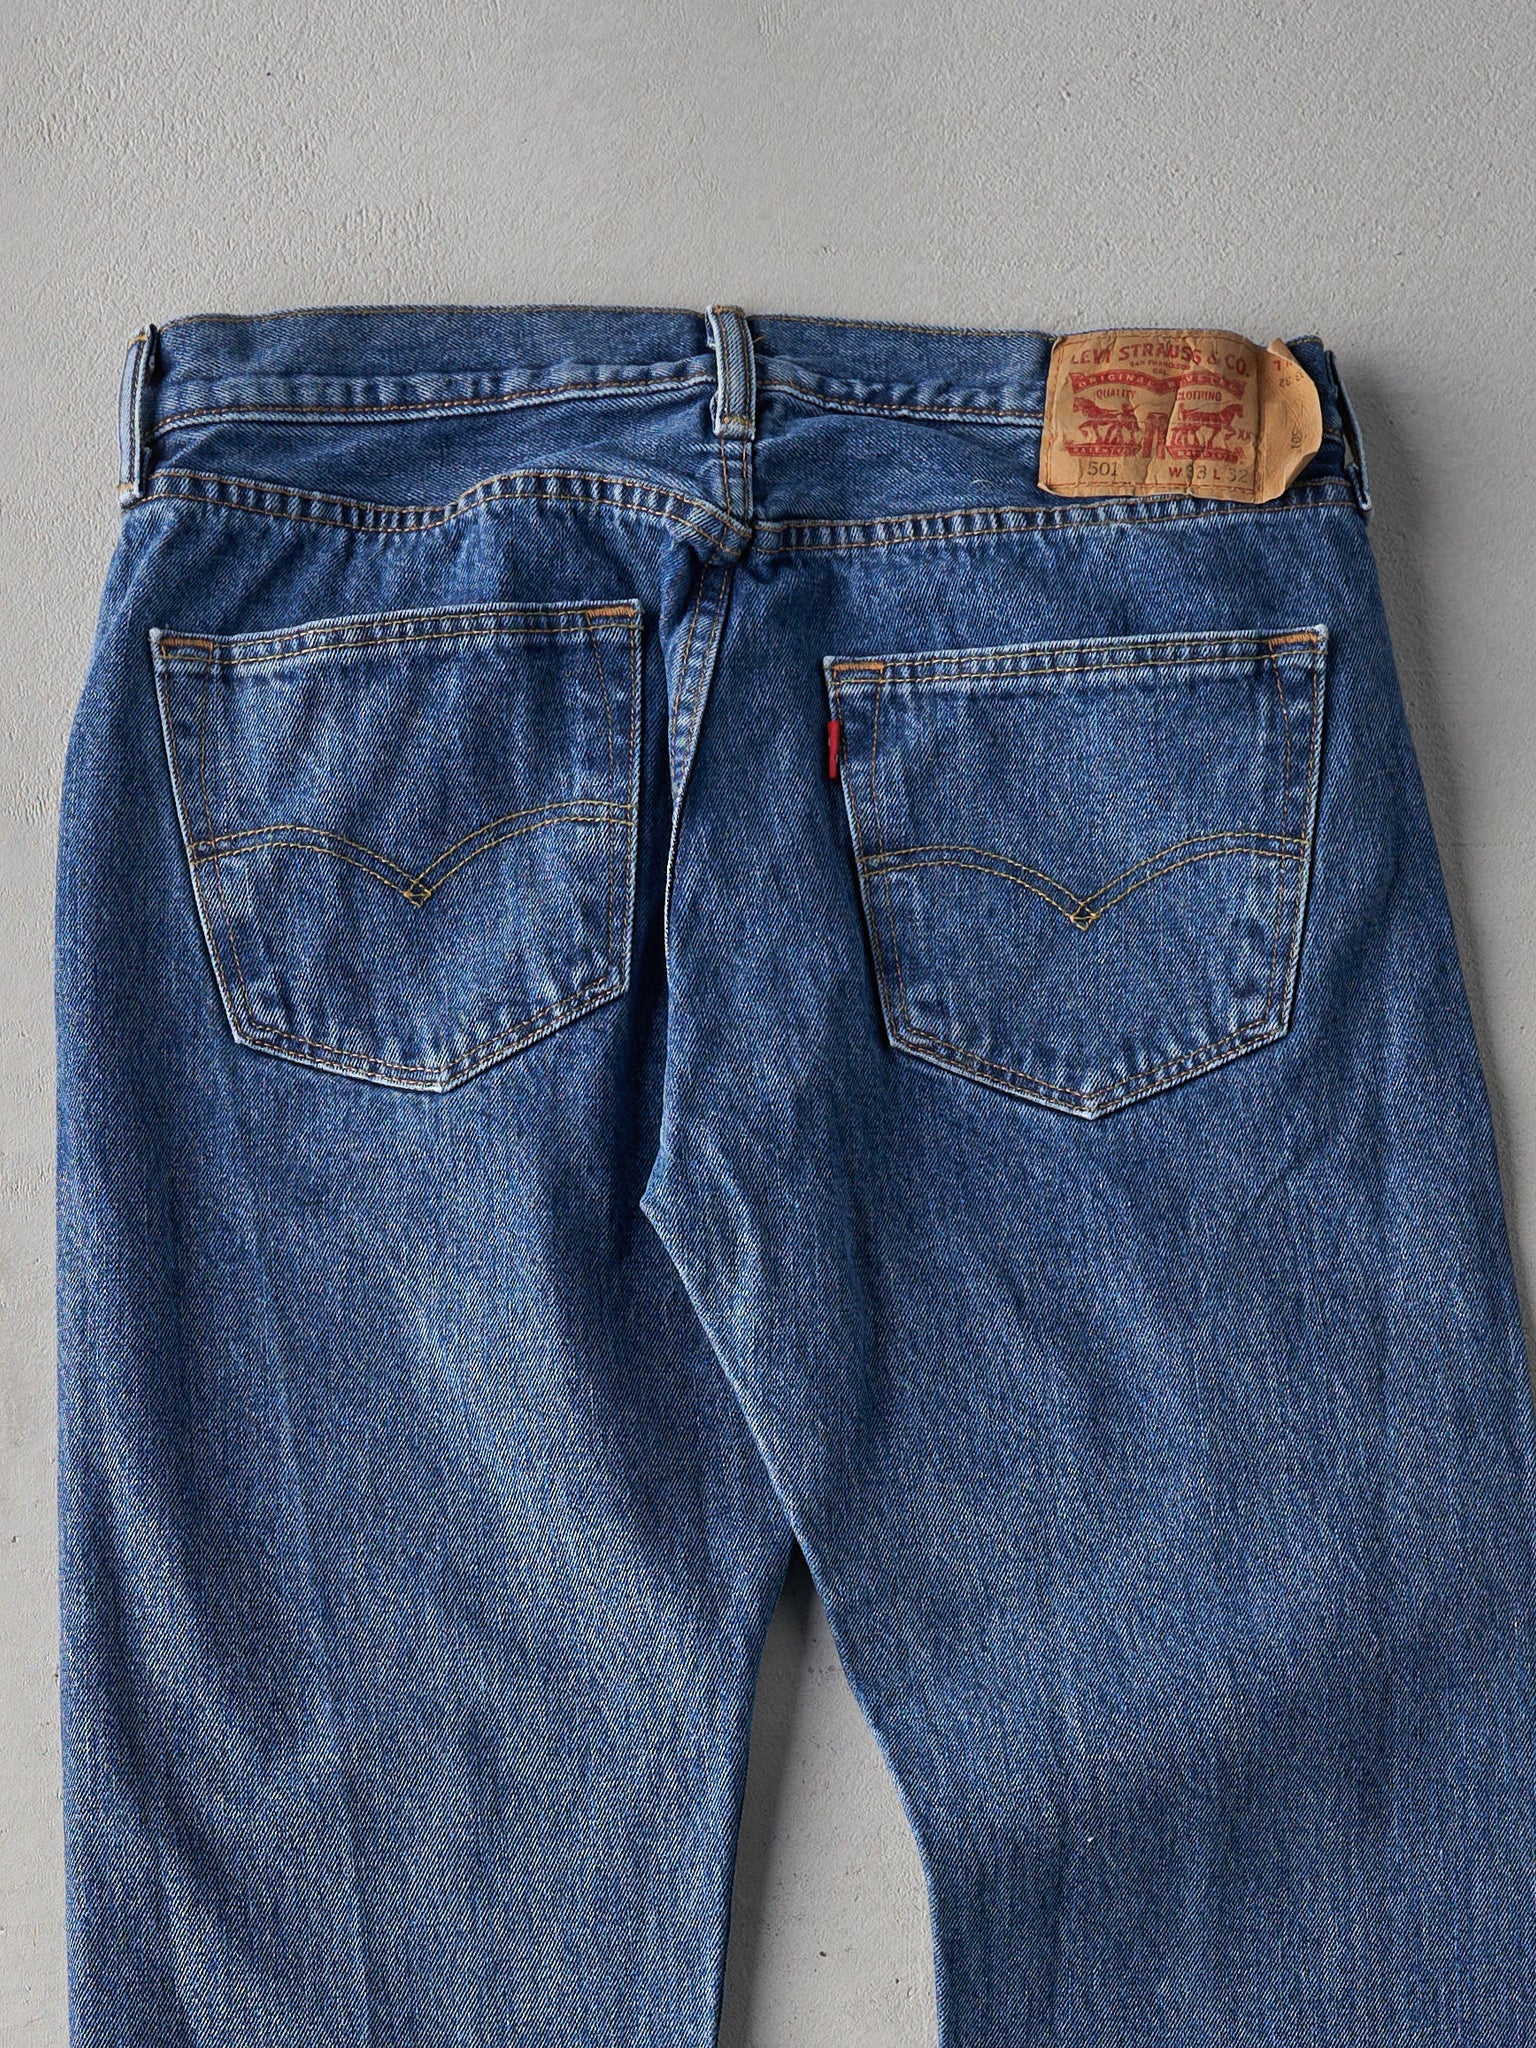 Vintage Mid Wash Levi's 501s Jeans (34x31)